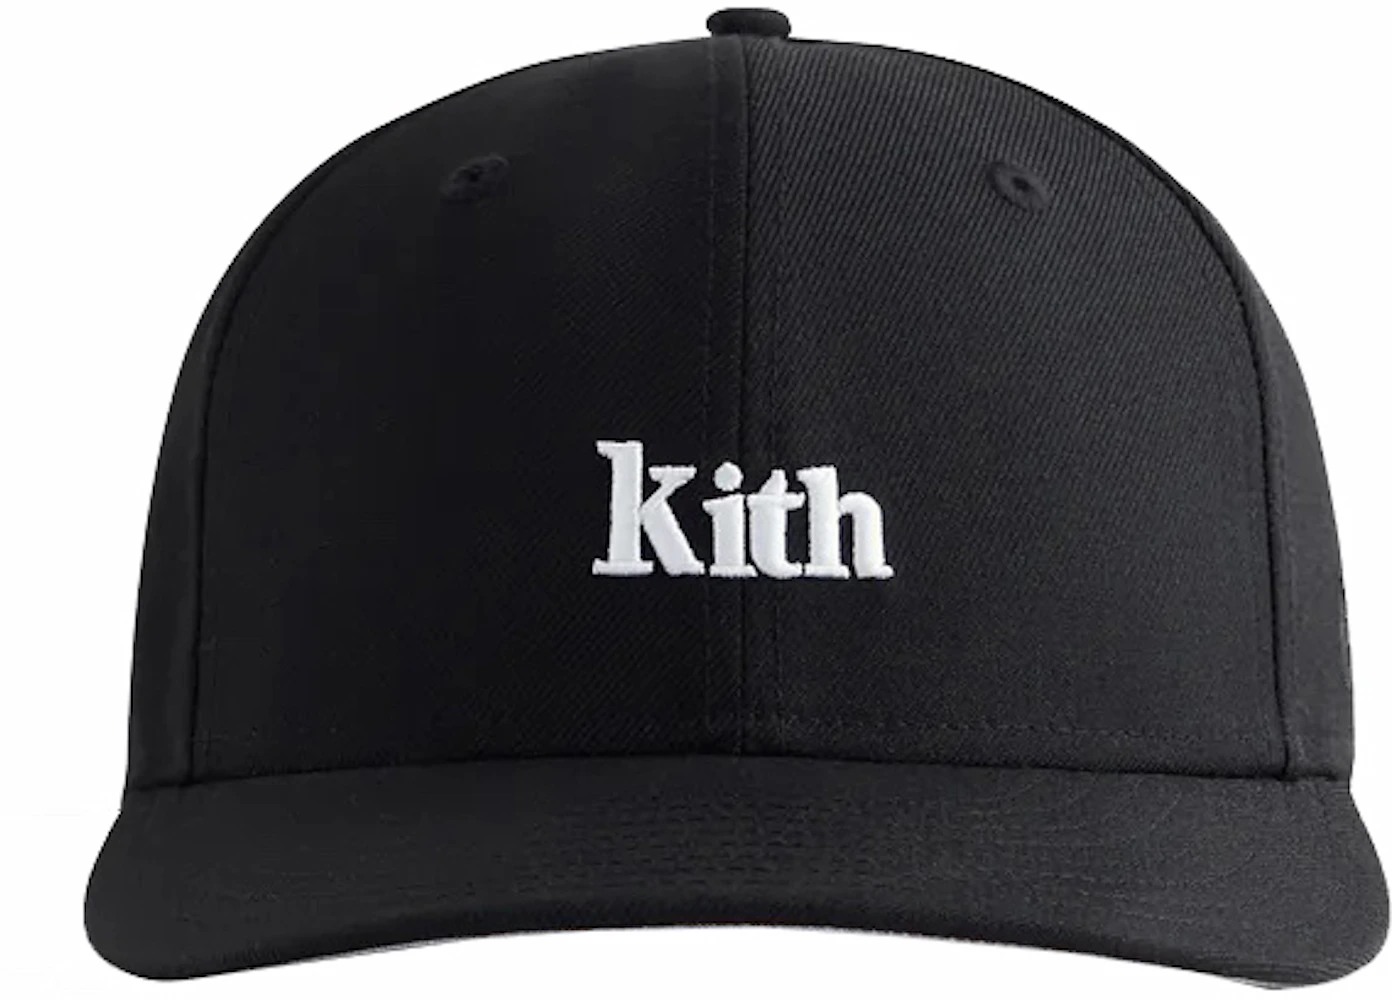 Kith Carbone Cap Black - FW17 - US